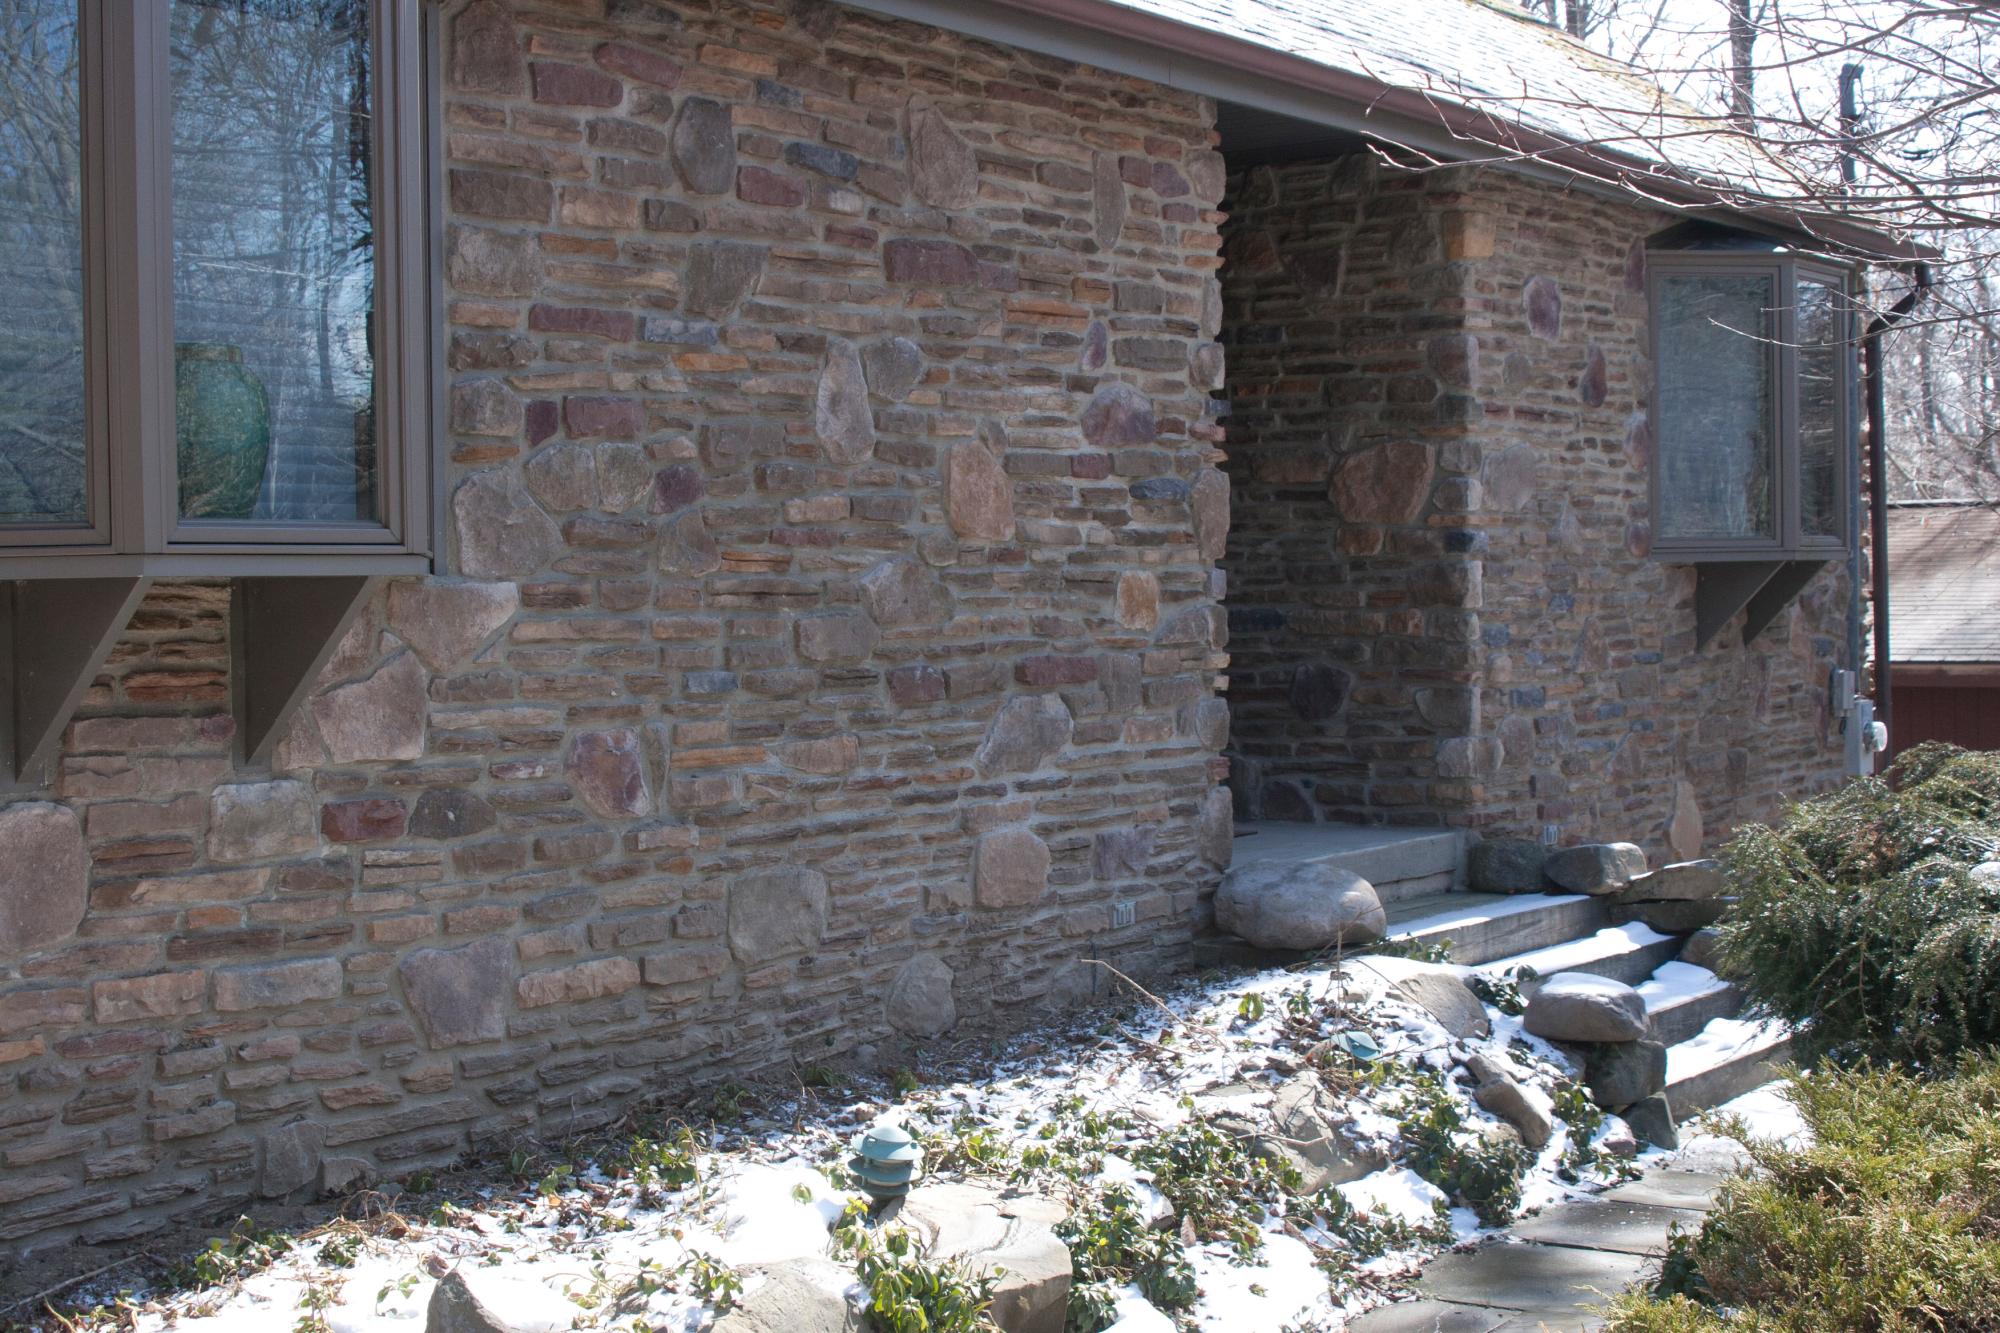 Filed stone / Ledge stone house front